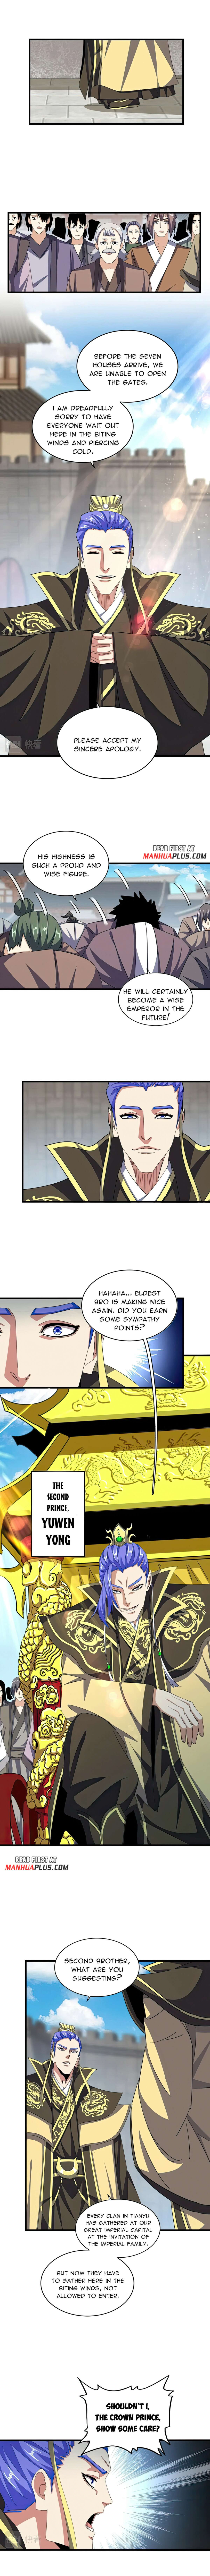 Magic Emperor - Page 2